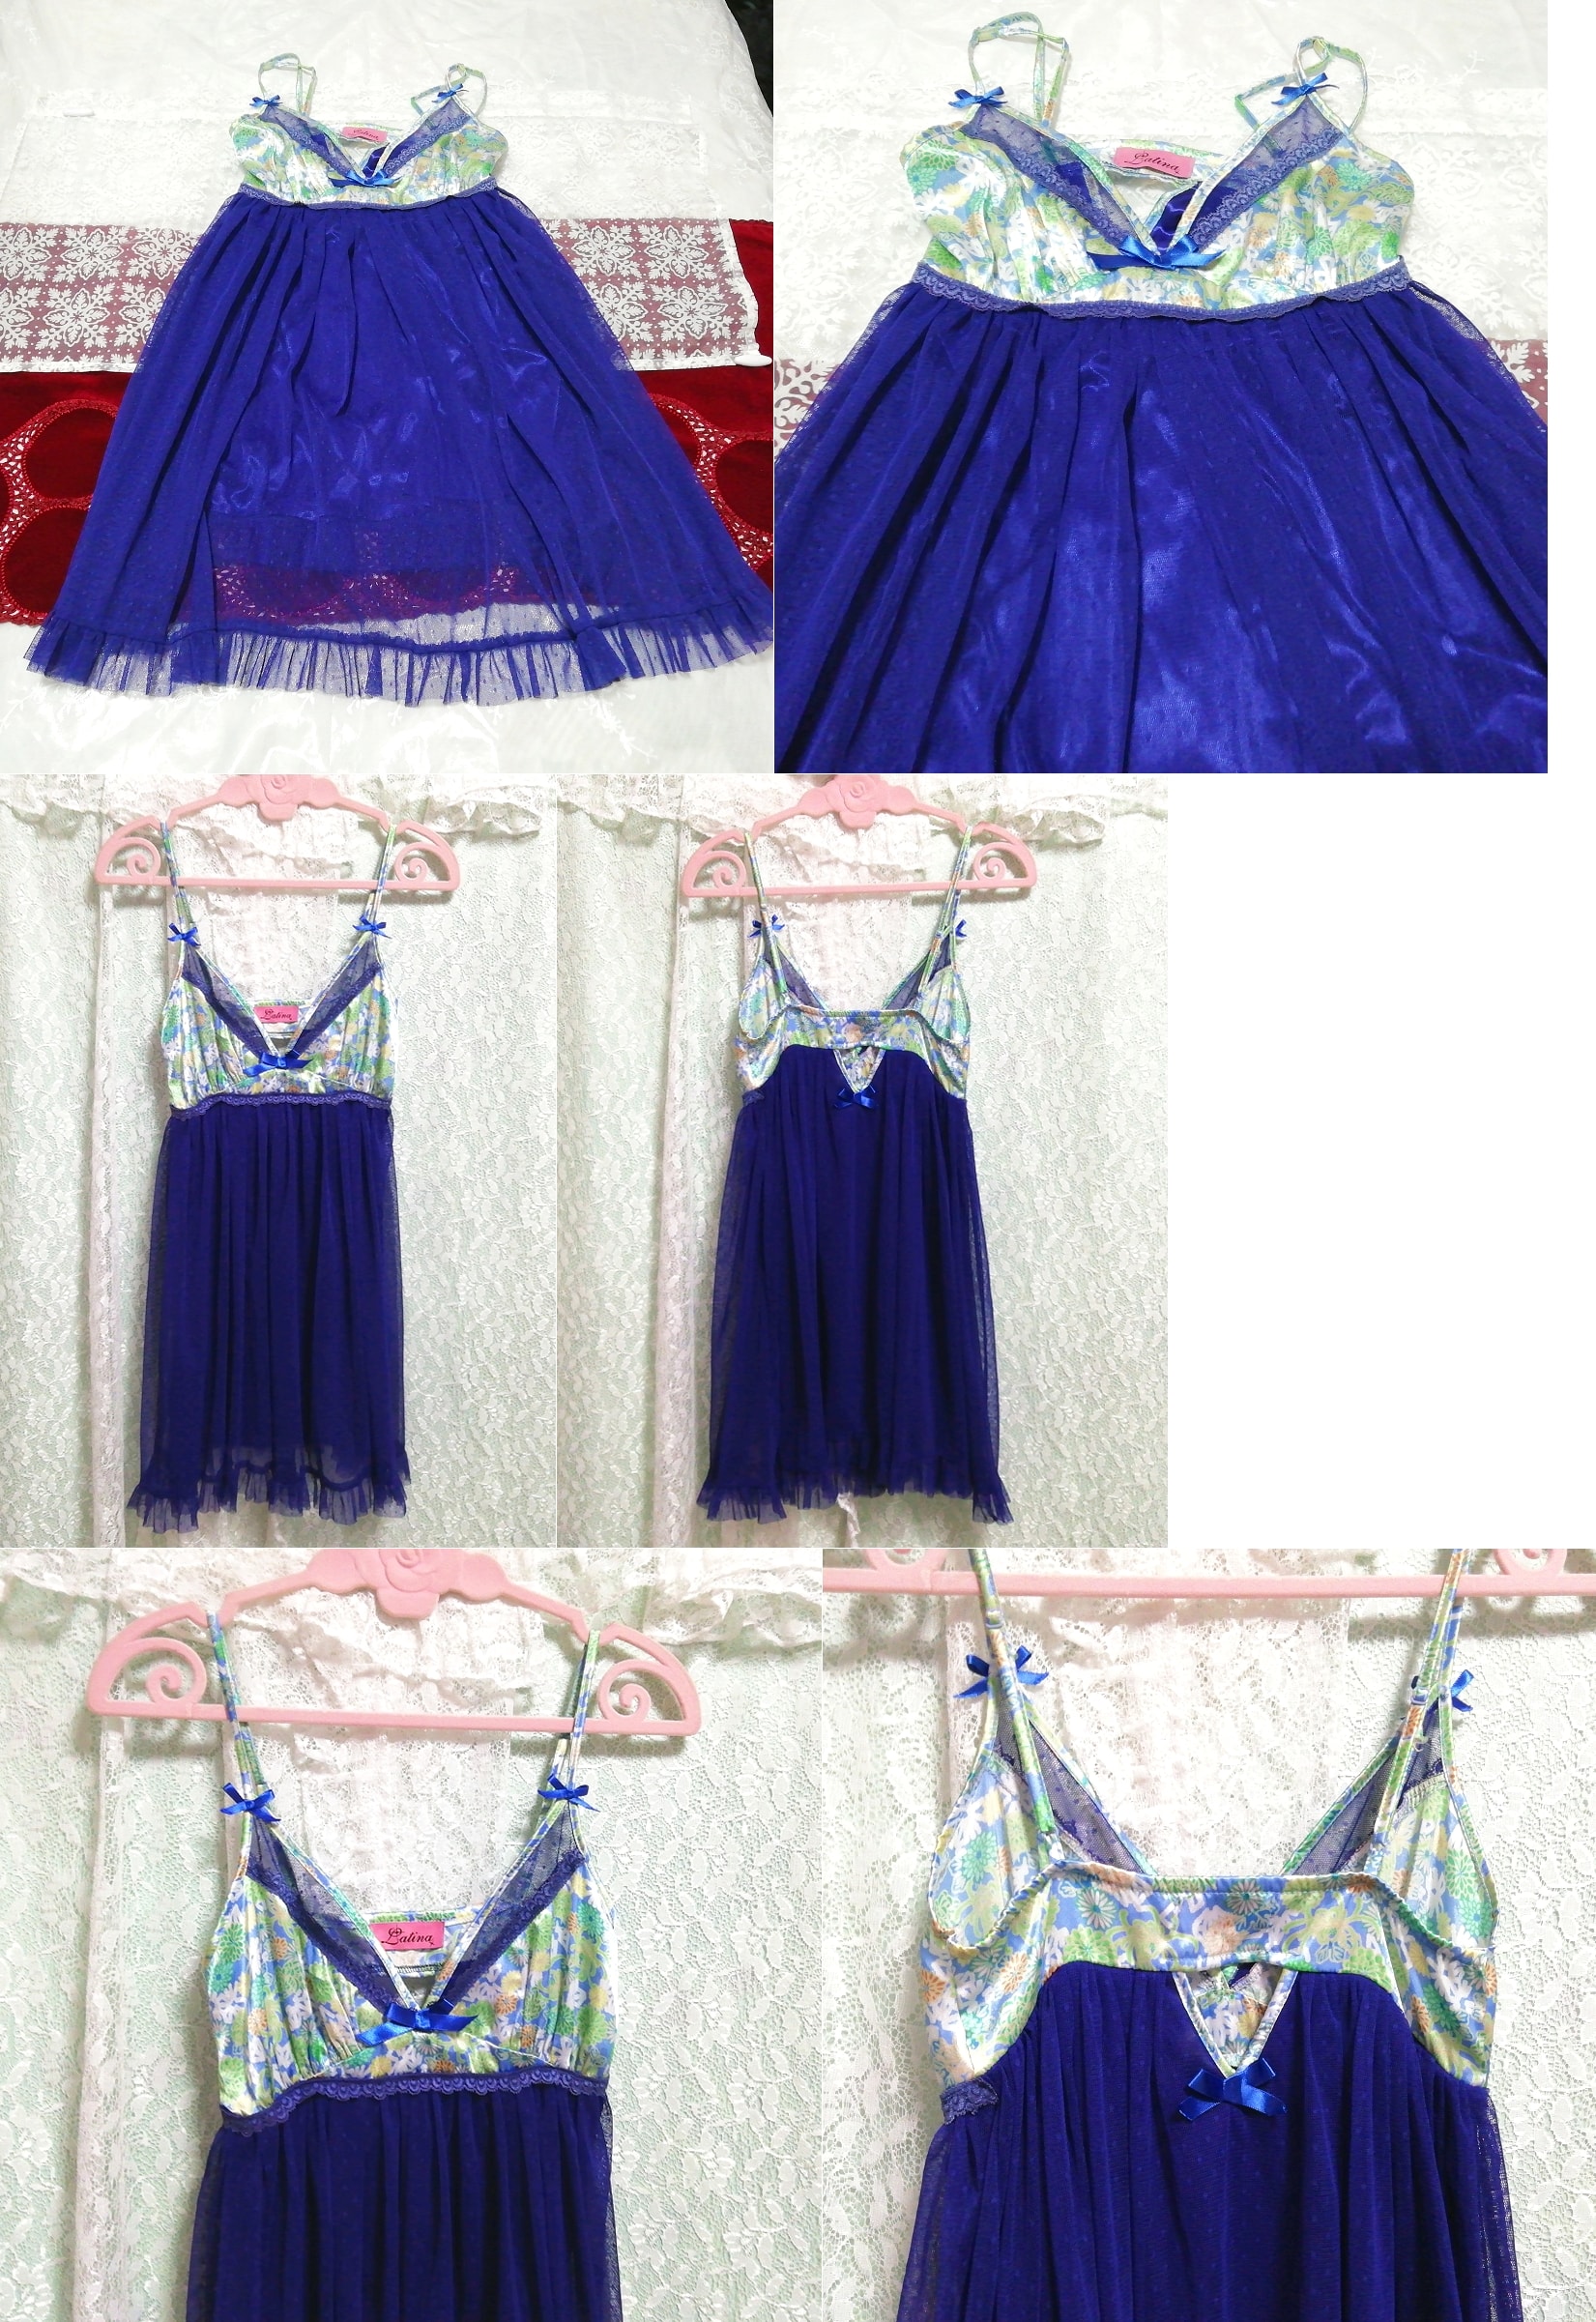 青緑レースネグリジェキャミソールワンピースベビードール Blue green lace negligee camisole babydoll dress, ファッション, レディースファッション, キャミソール